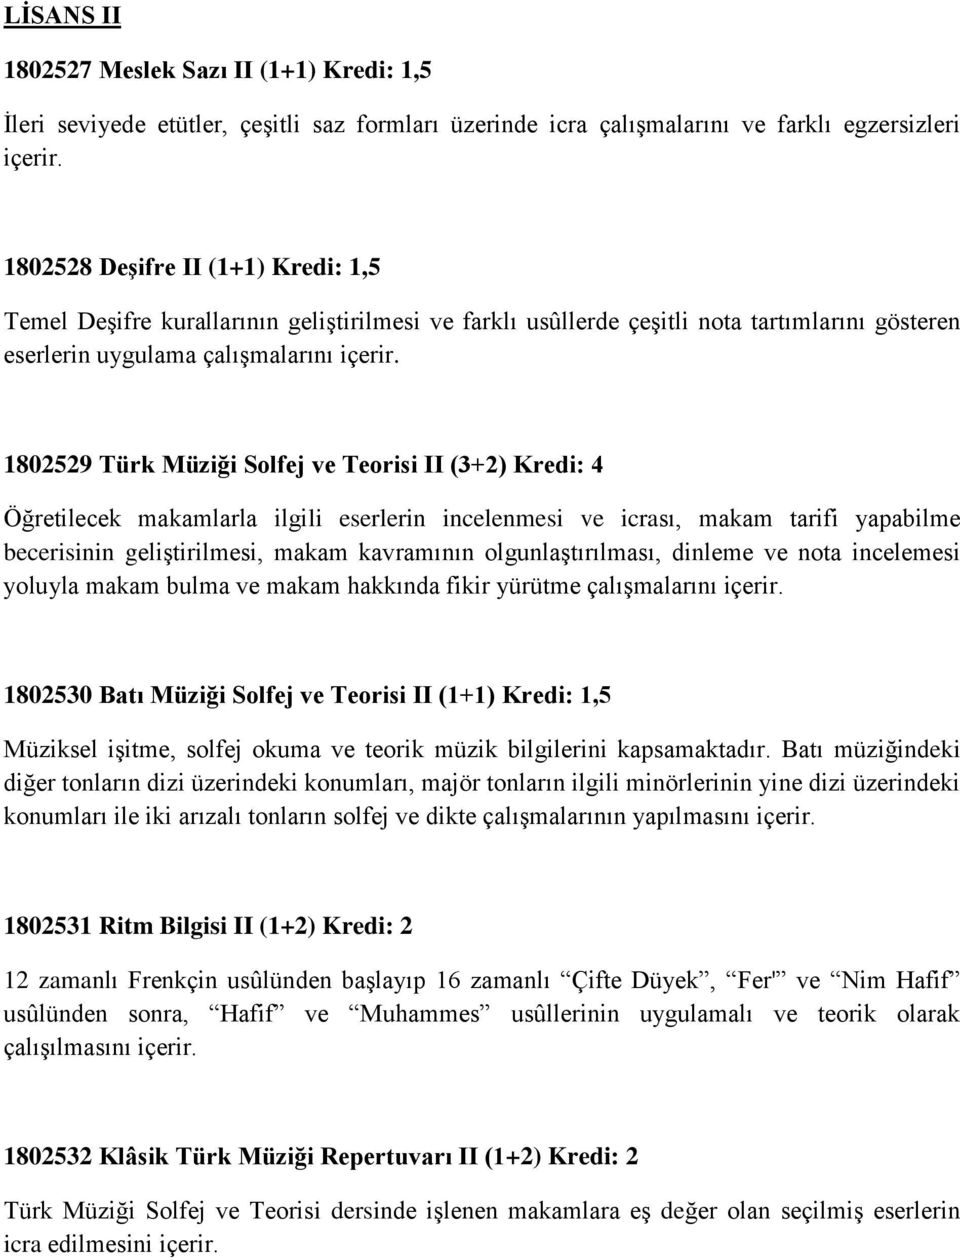 1802529 Türk Müziği Solfej ve Teorisi II (3+2) Kredi: 4 Öğretilecek makamlarla ilgili eserlerin incelenmesi ve icrası, makam tarifi yapabilme becerisinin geliştirilmesi, makam kavramının